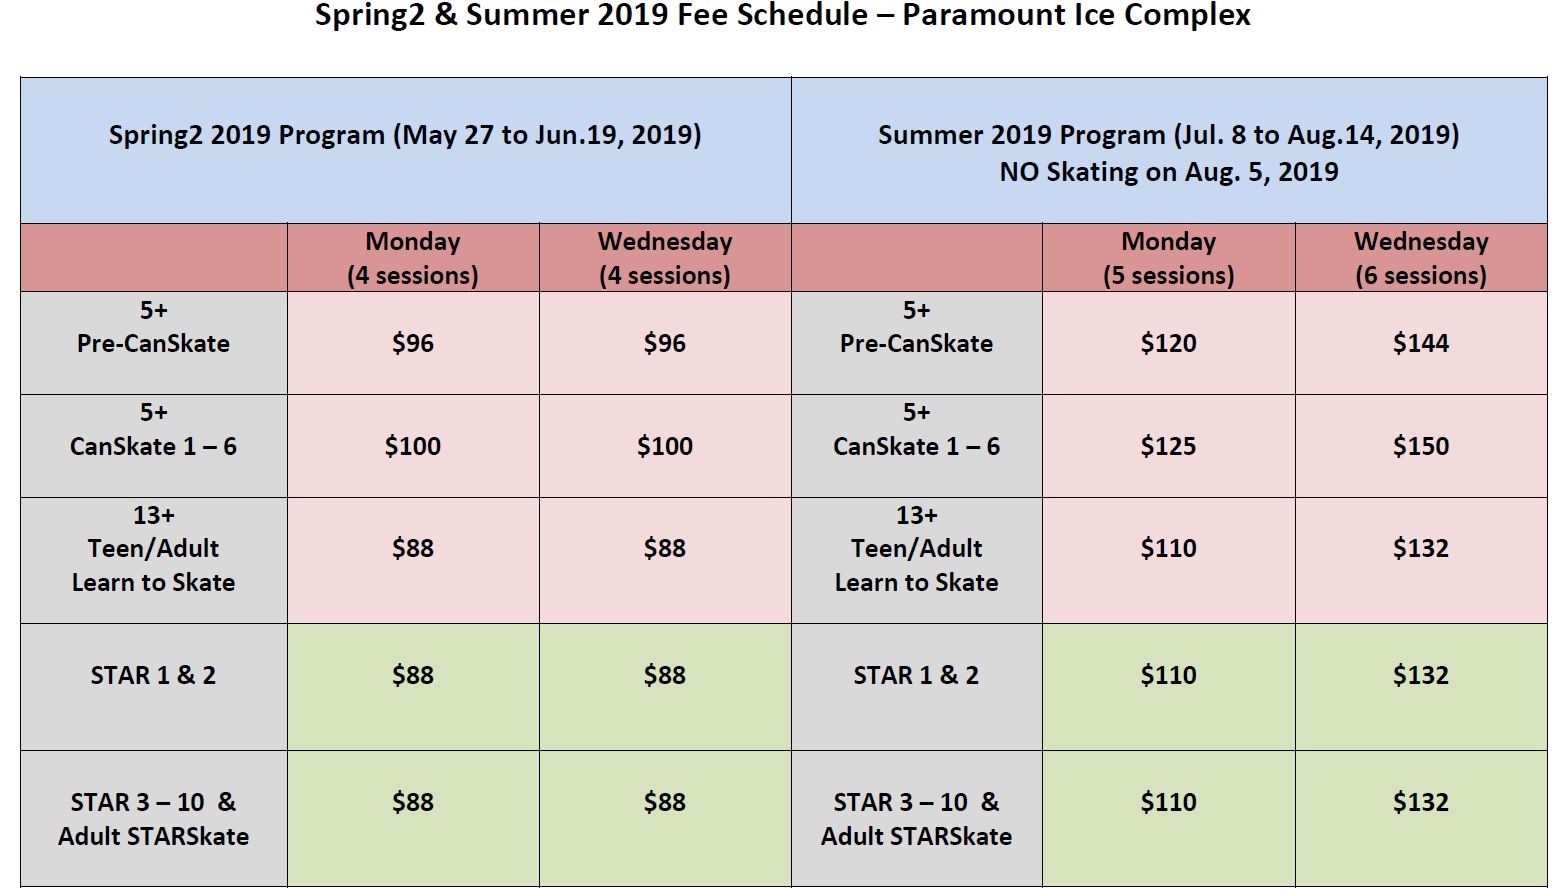 Spring2-Summer Fee Schedule